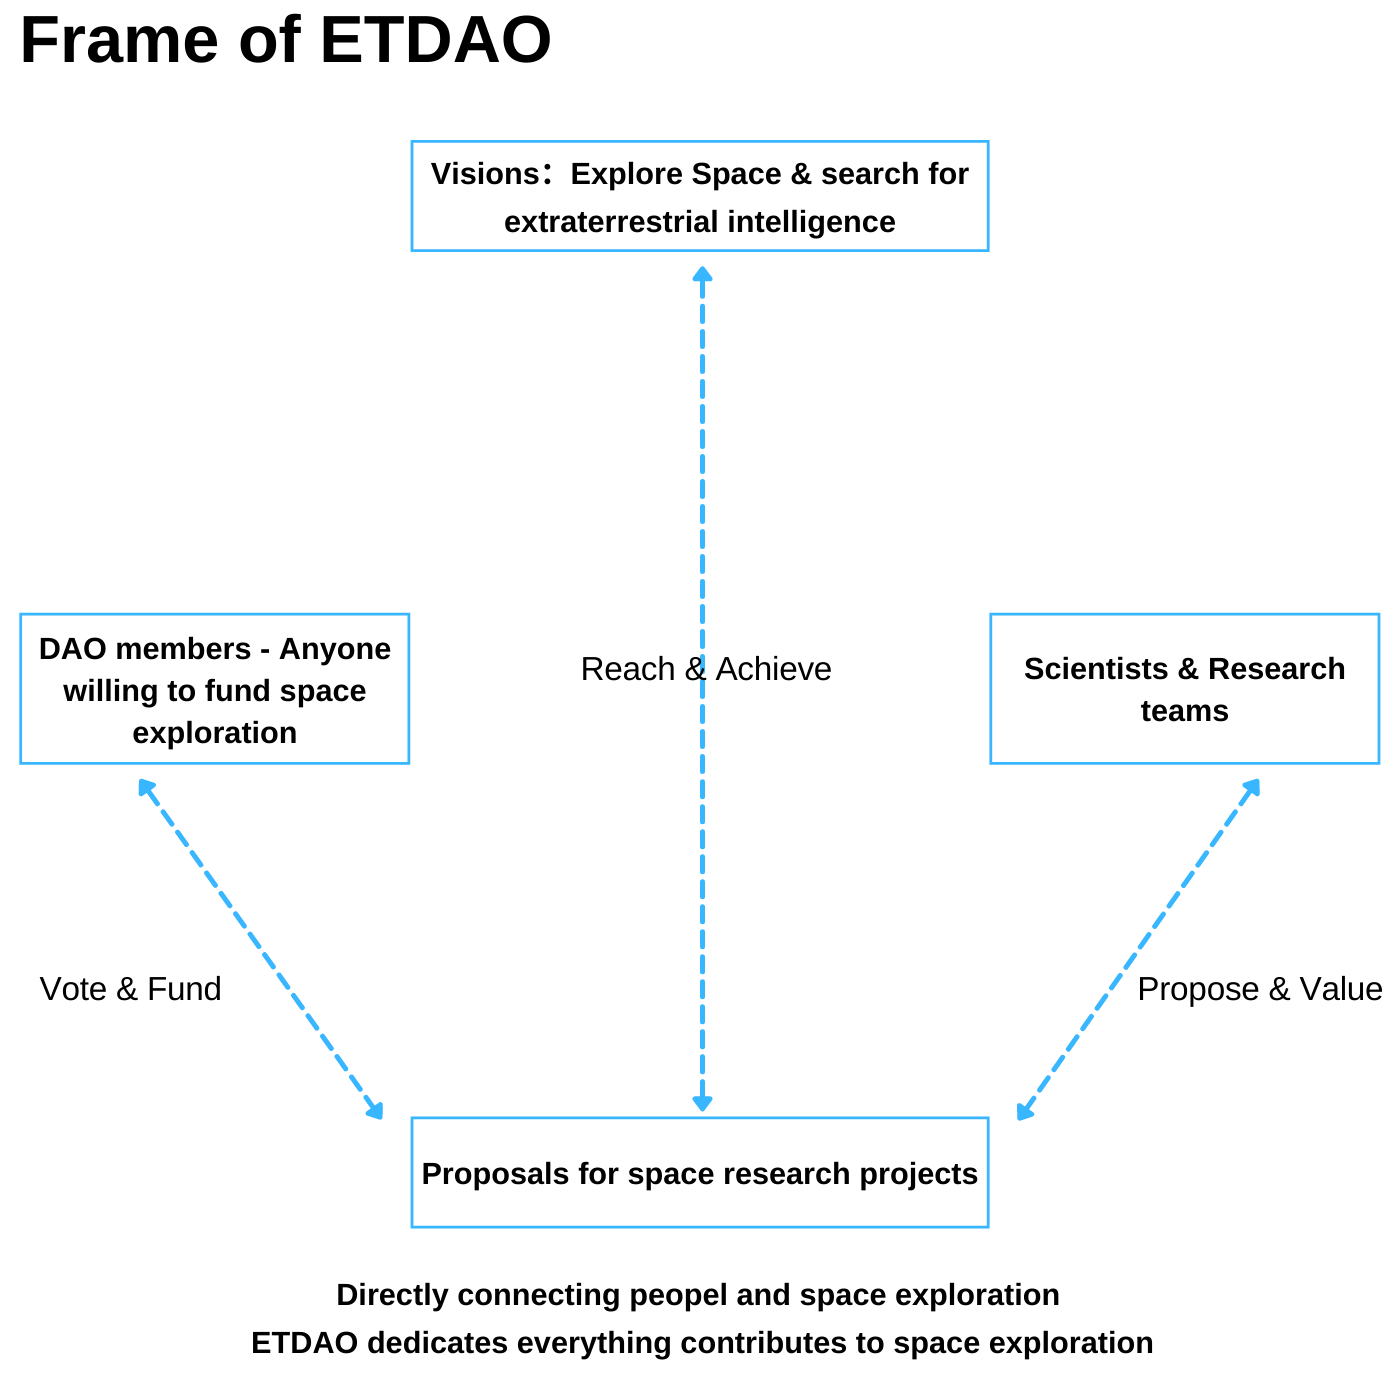 Frame of ETDAO